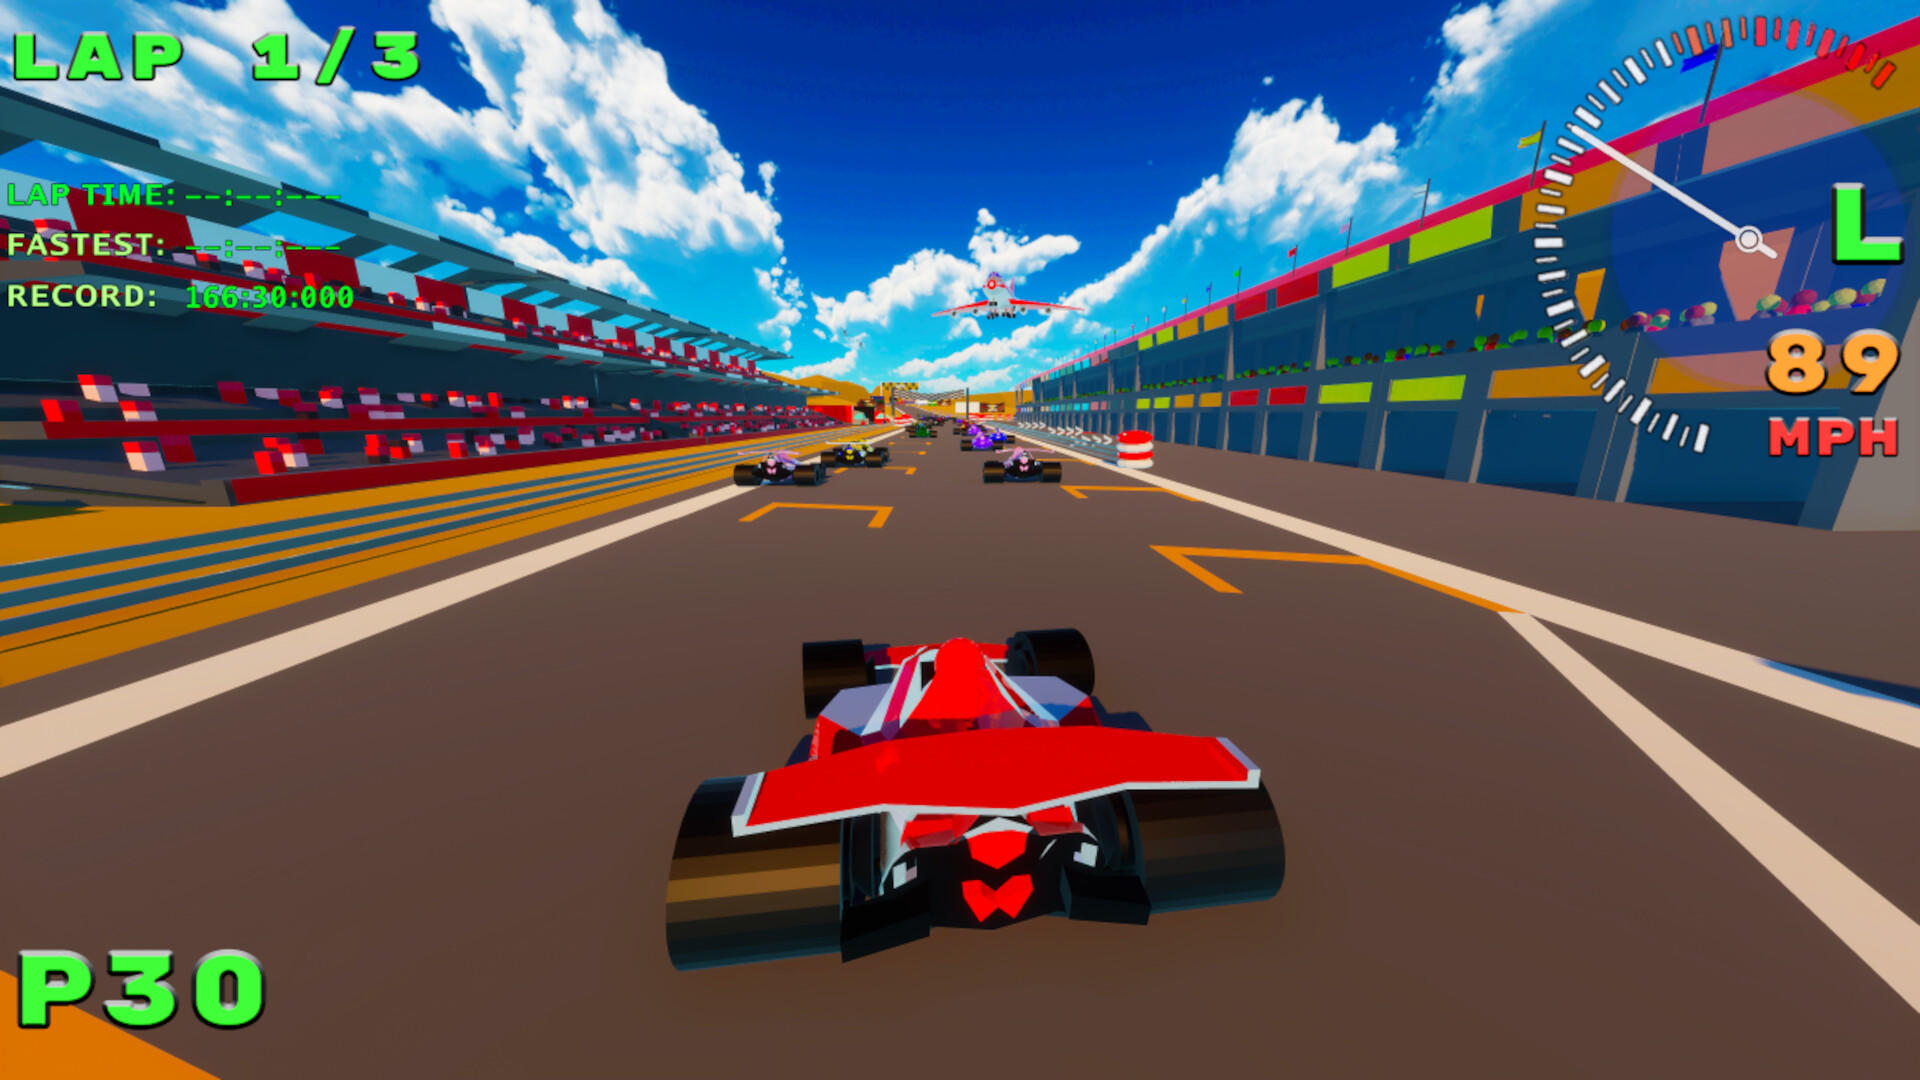 Screenshot 1 of SPGP Super Polygon Grand Prix 